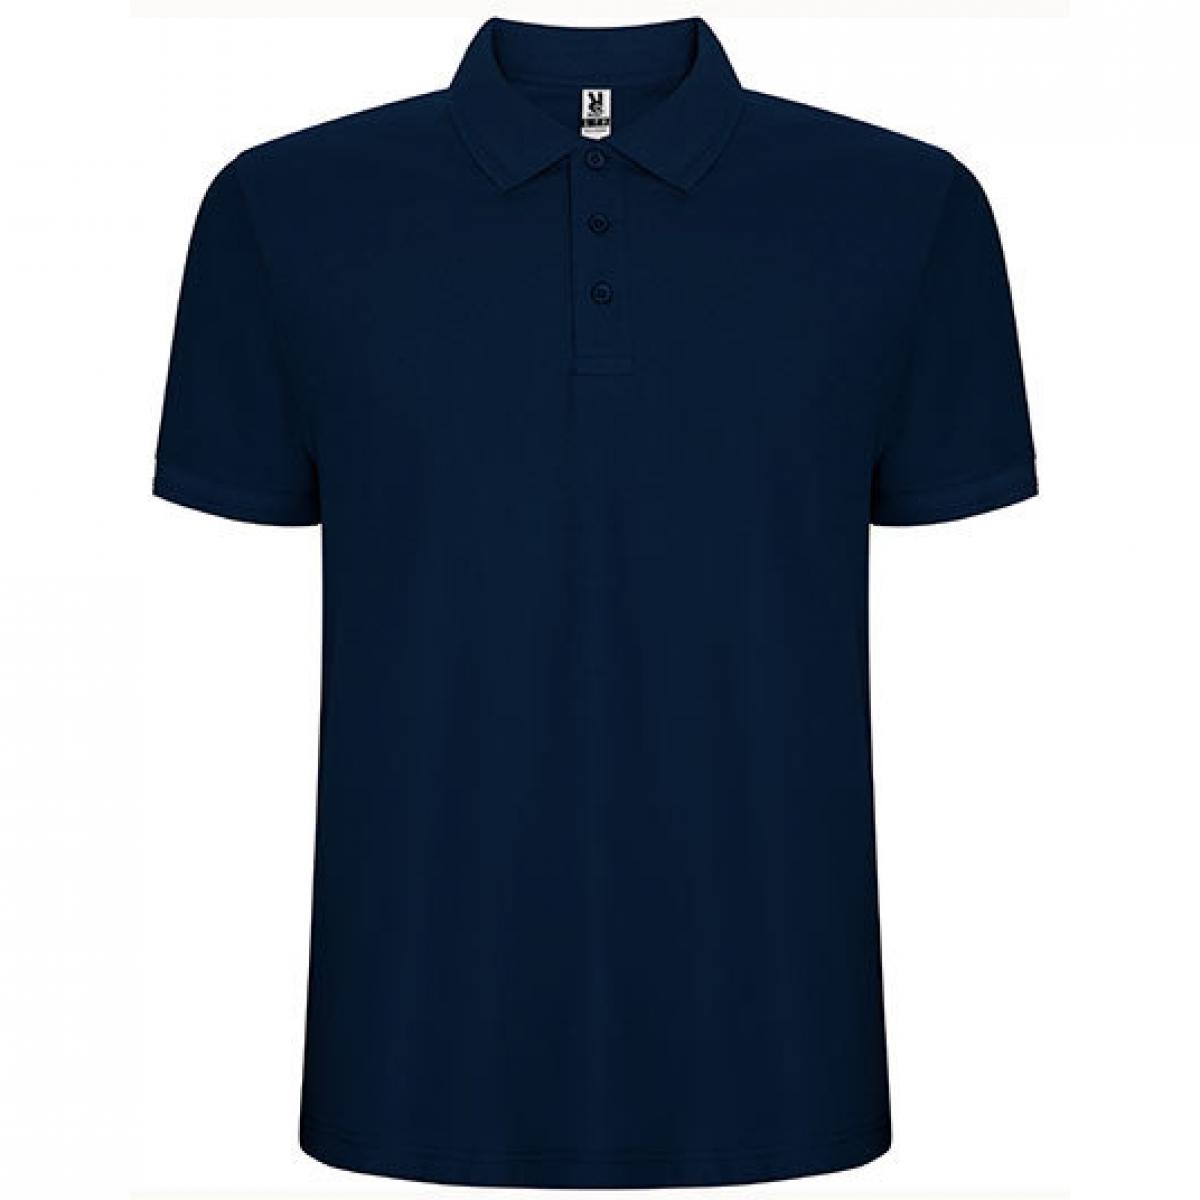 Hersteller: Roly Herstellernummer: PO6609 Artikelbezeichnung: Pegaso Premium Poloshirt - Piqué Farbe: Navy Blue 55